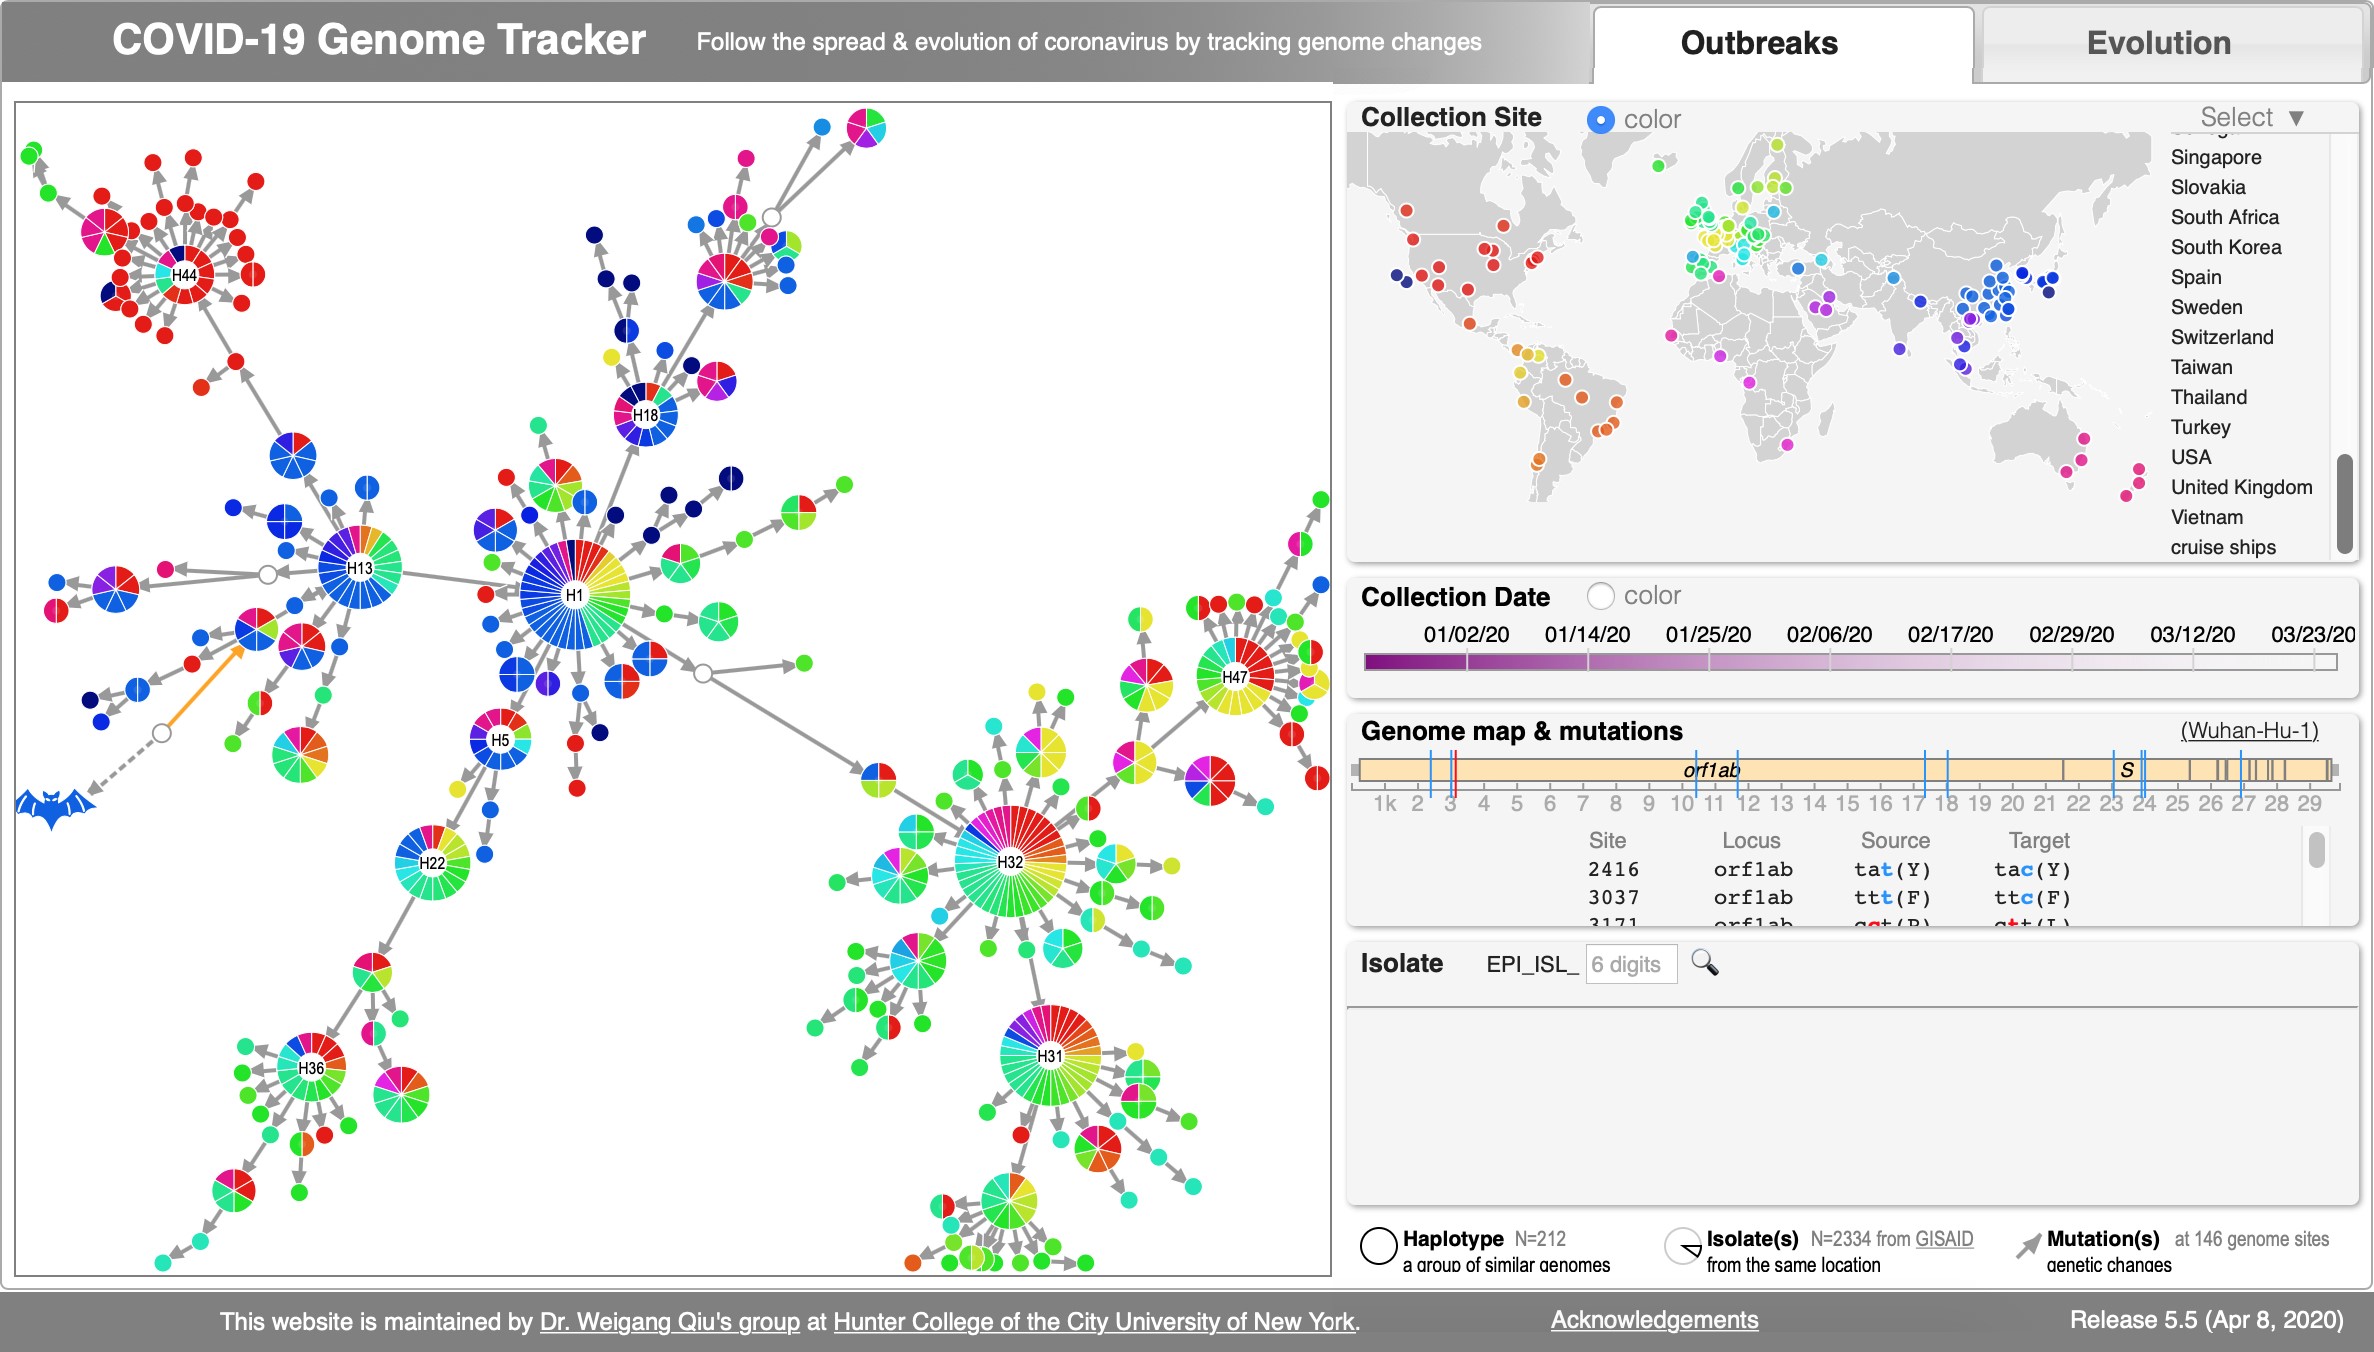 Akther, Bezrucenkovas, Sulkow, Panlasigui, Qiu, Di (April, 2020). "CoV Genome Tracker: tracing genomic footprints of Covid-19 pandemic". BioRxiv; Web app: SARS-CoV-2 Genome Tracker; Github: https://github.com/weigangq/cov-browser